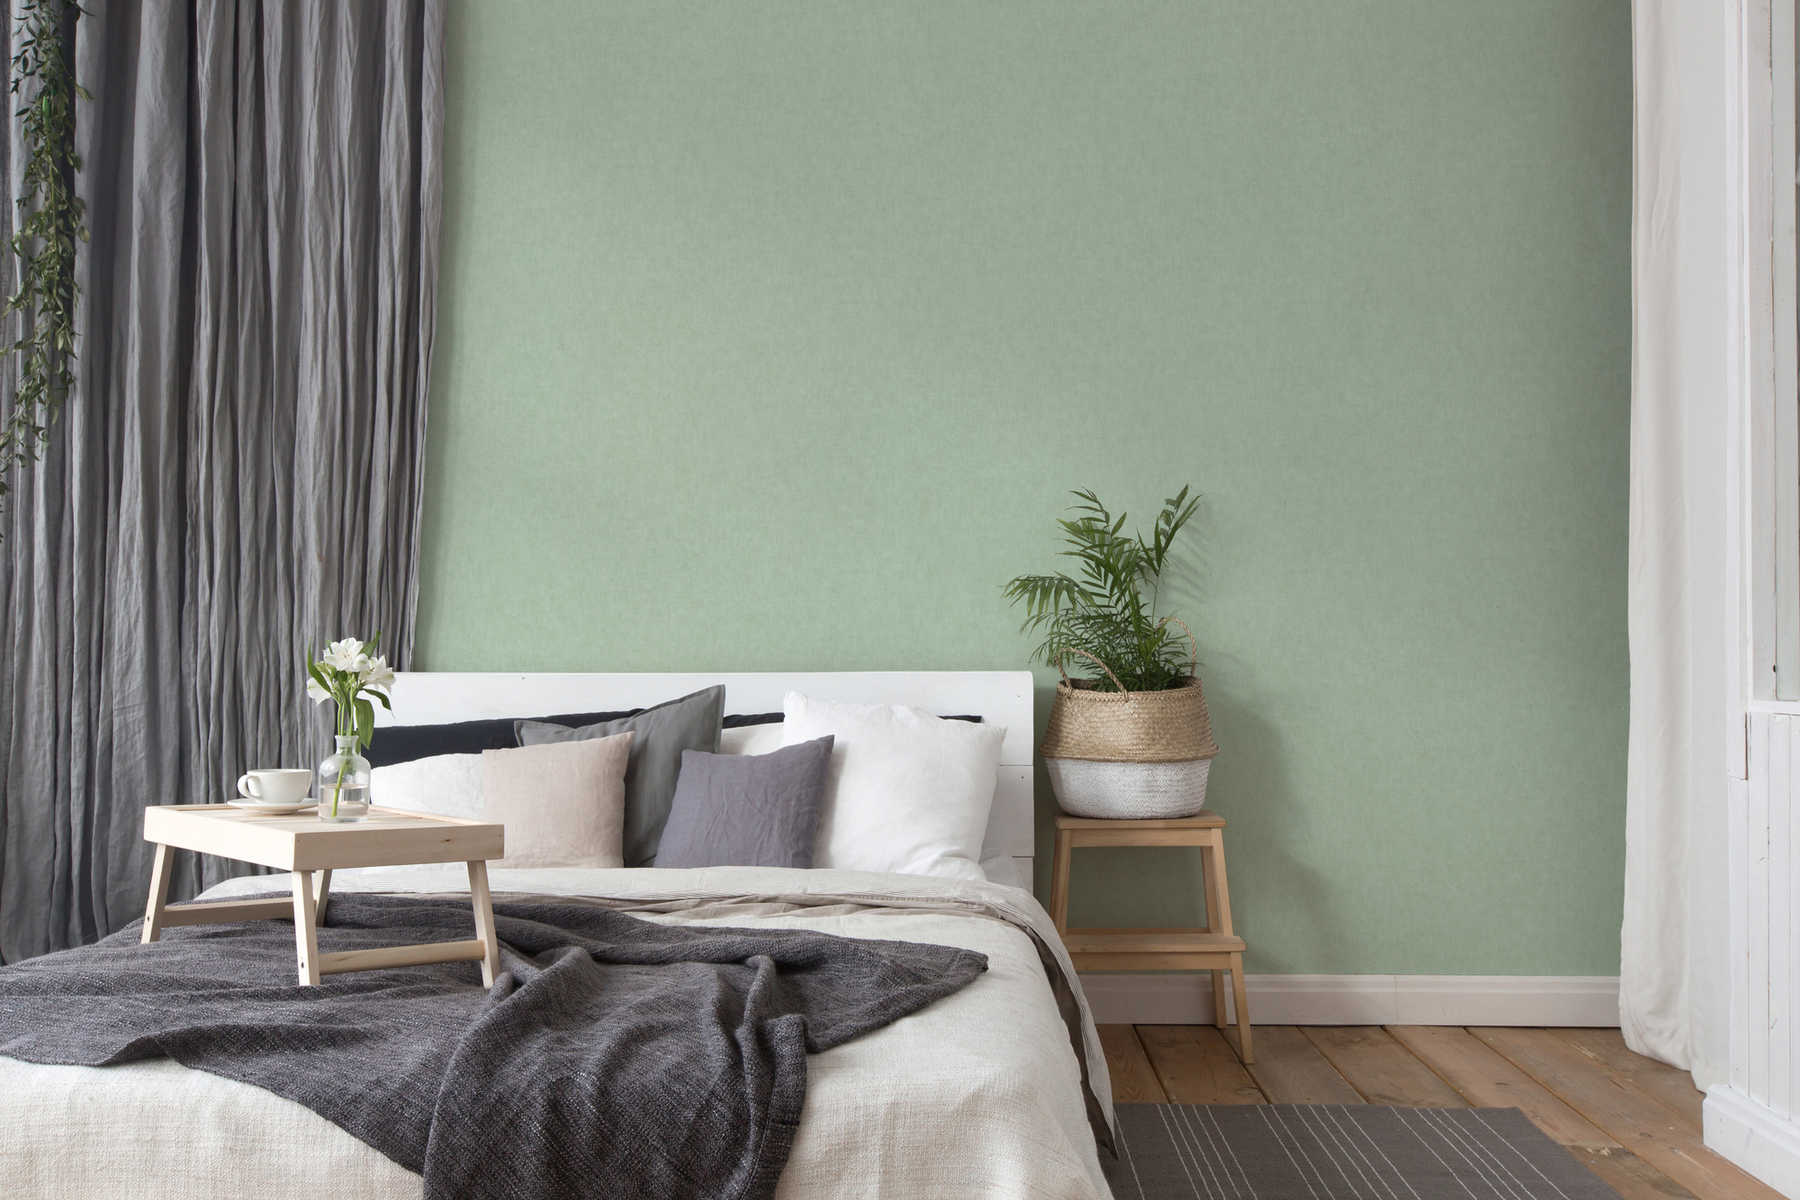             Papel pintado liso, aspecto de lino y estilo escandinavo - verde
        